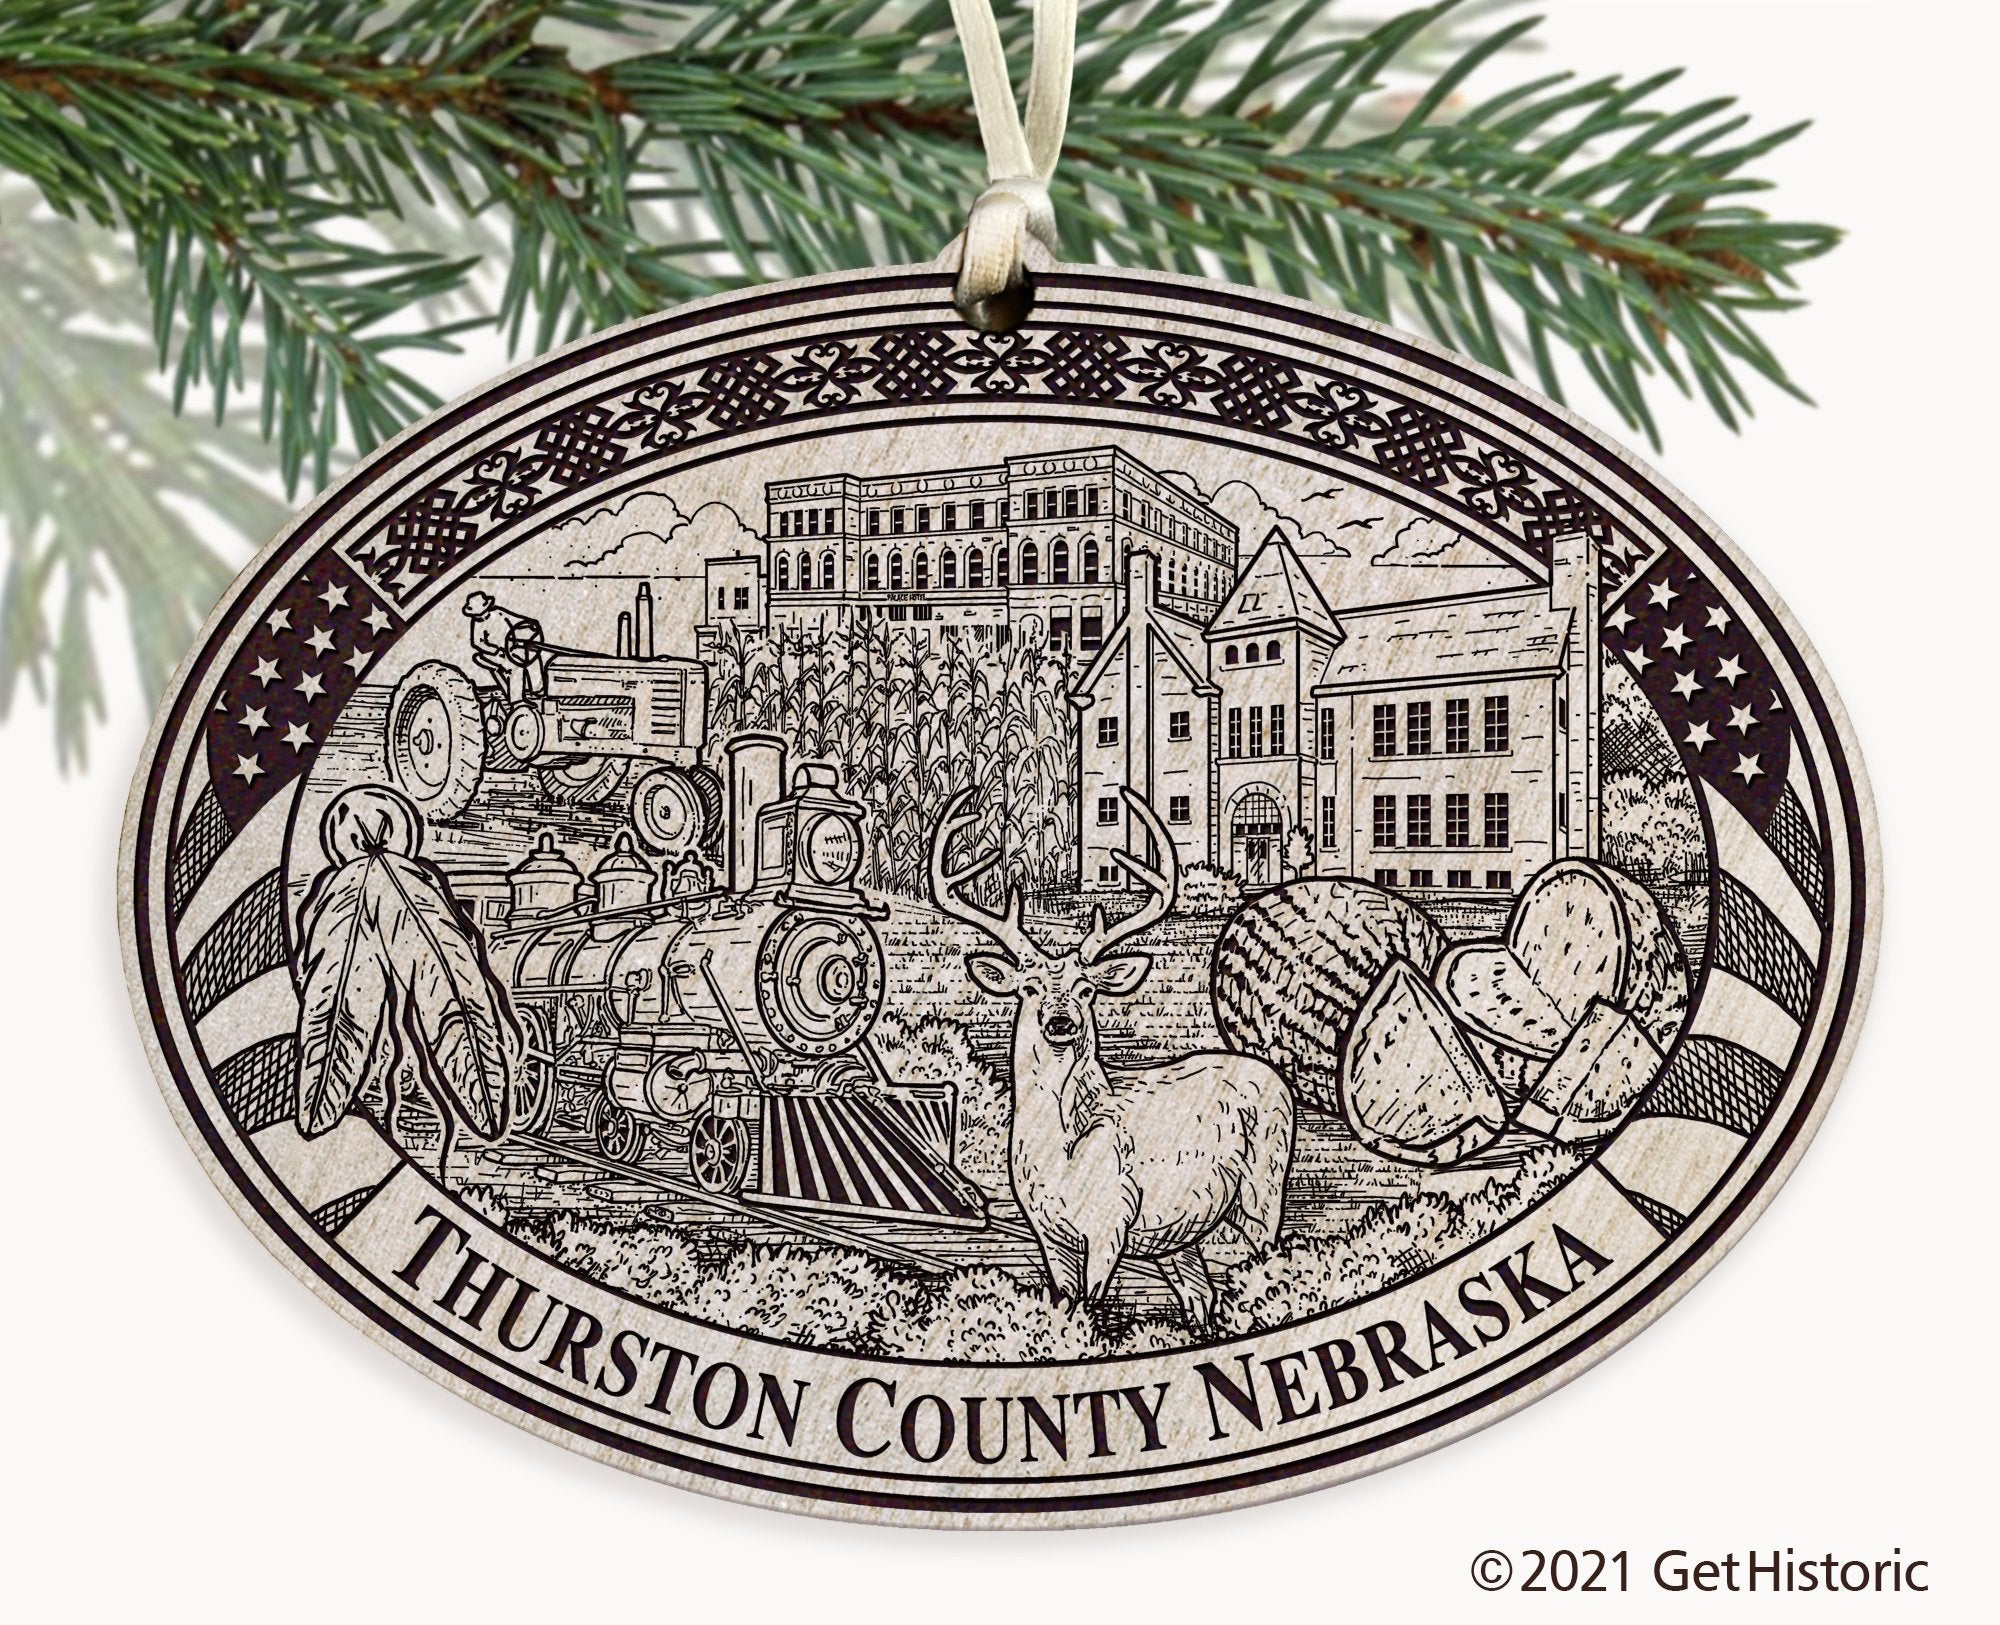 Thurston County Nebraska Engraved Ornament